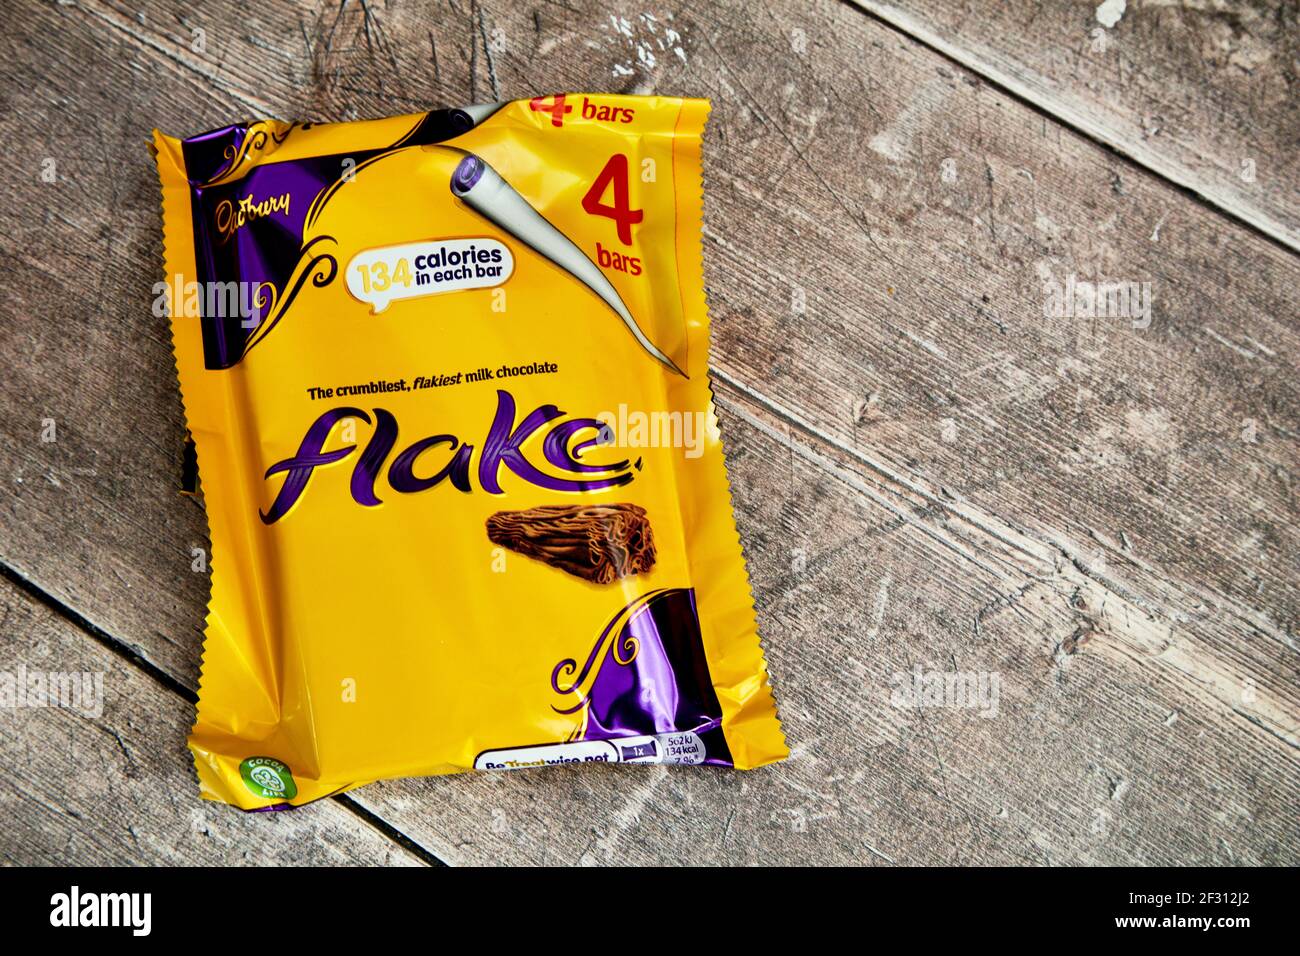 Cadbury Flake Chocolate Bar 4 Pack Stock Photo